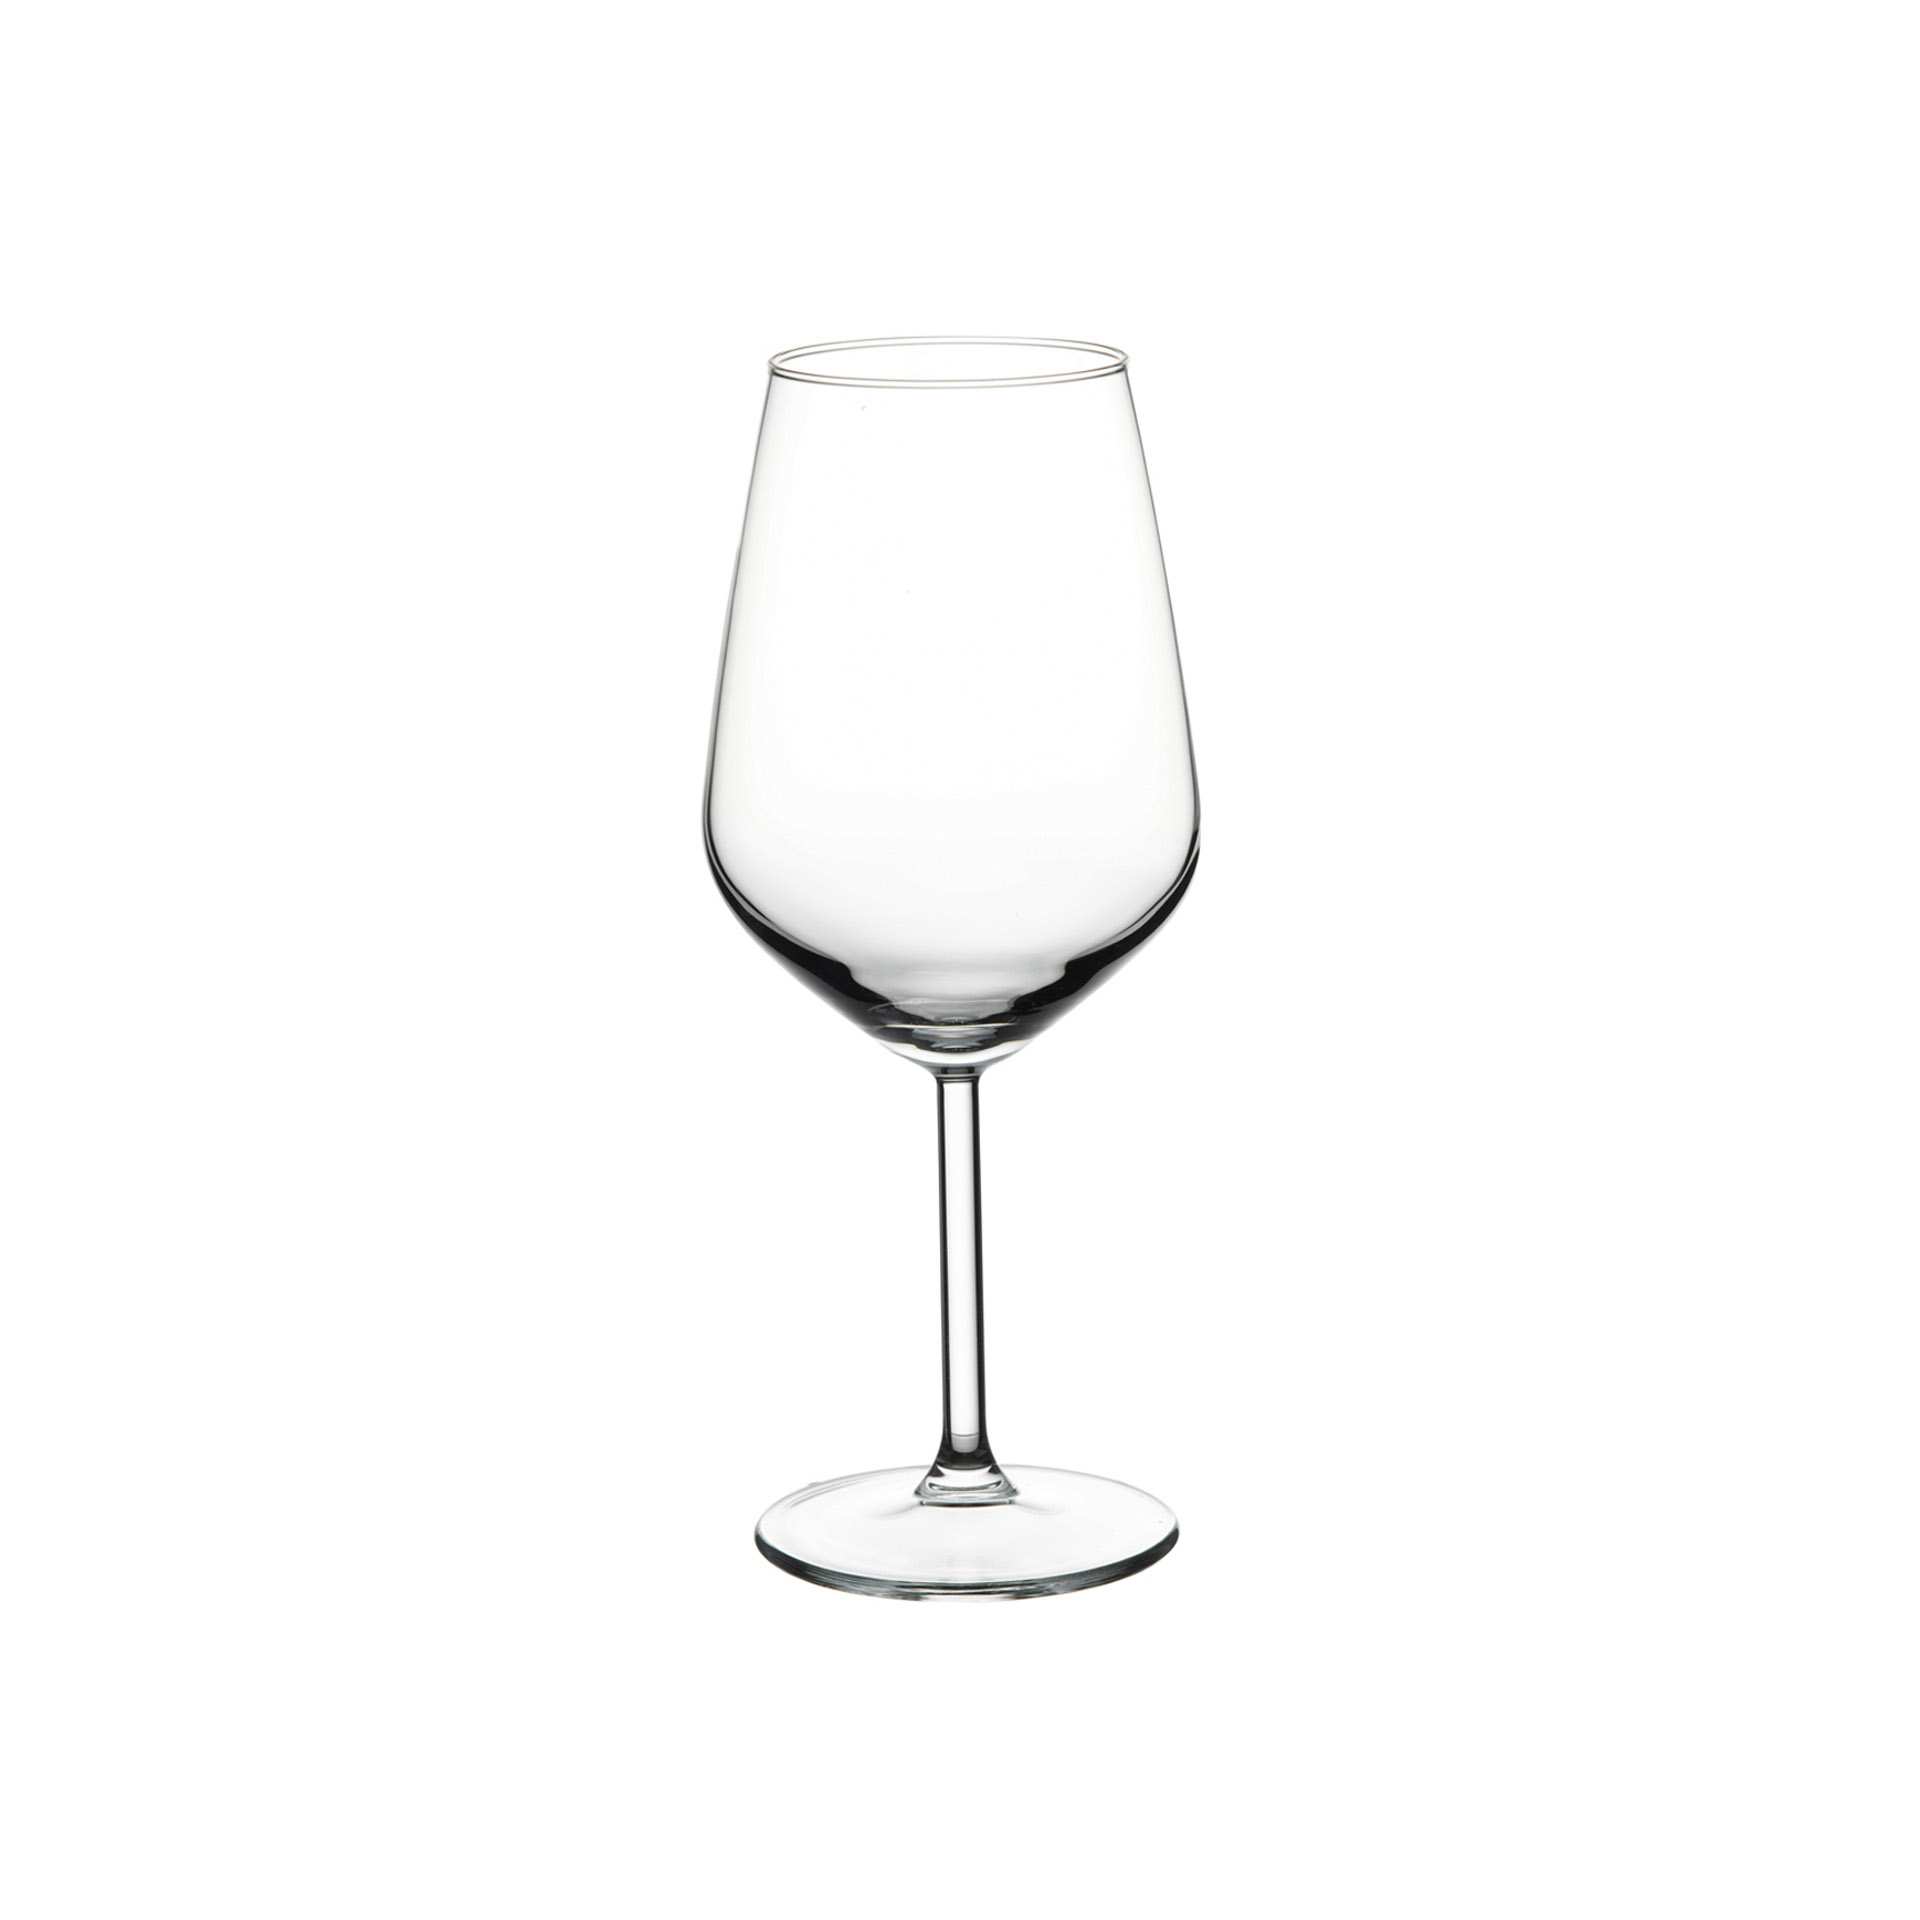 Weinglas - Set á 6 Stück - Serie Allegra - Höhe 21,7 cm - Ø oben / unten 9,1 / 7,8 cm - Inhalt 0,49 l - Glas - 440065-A